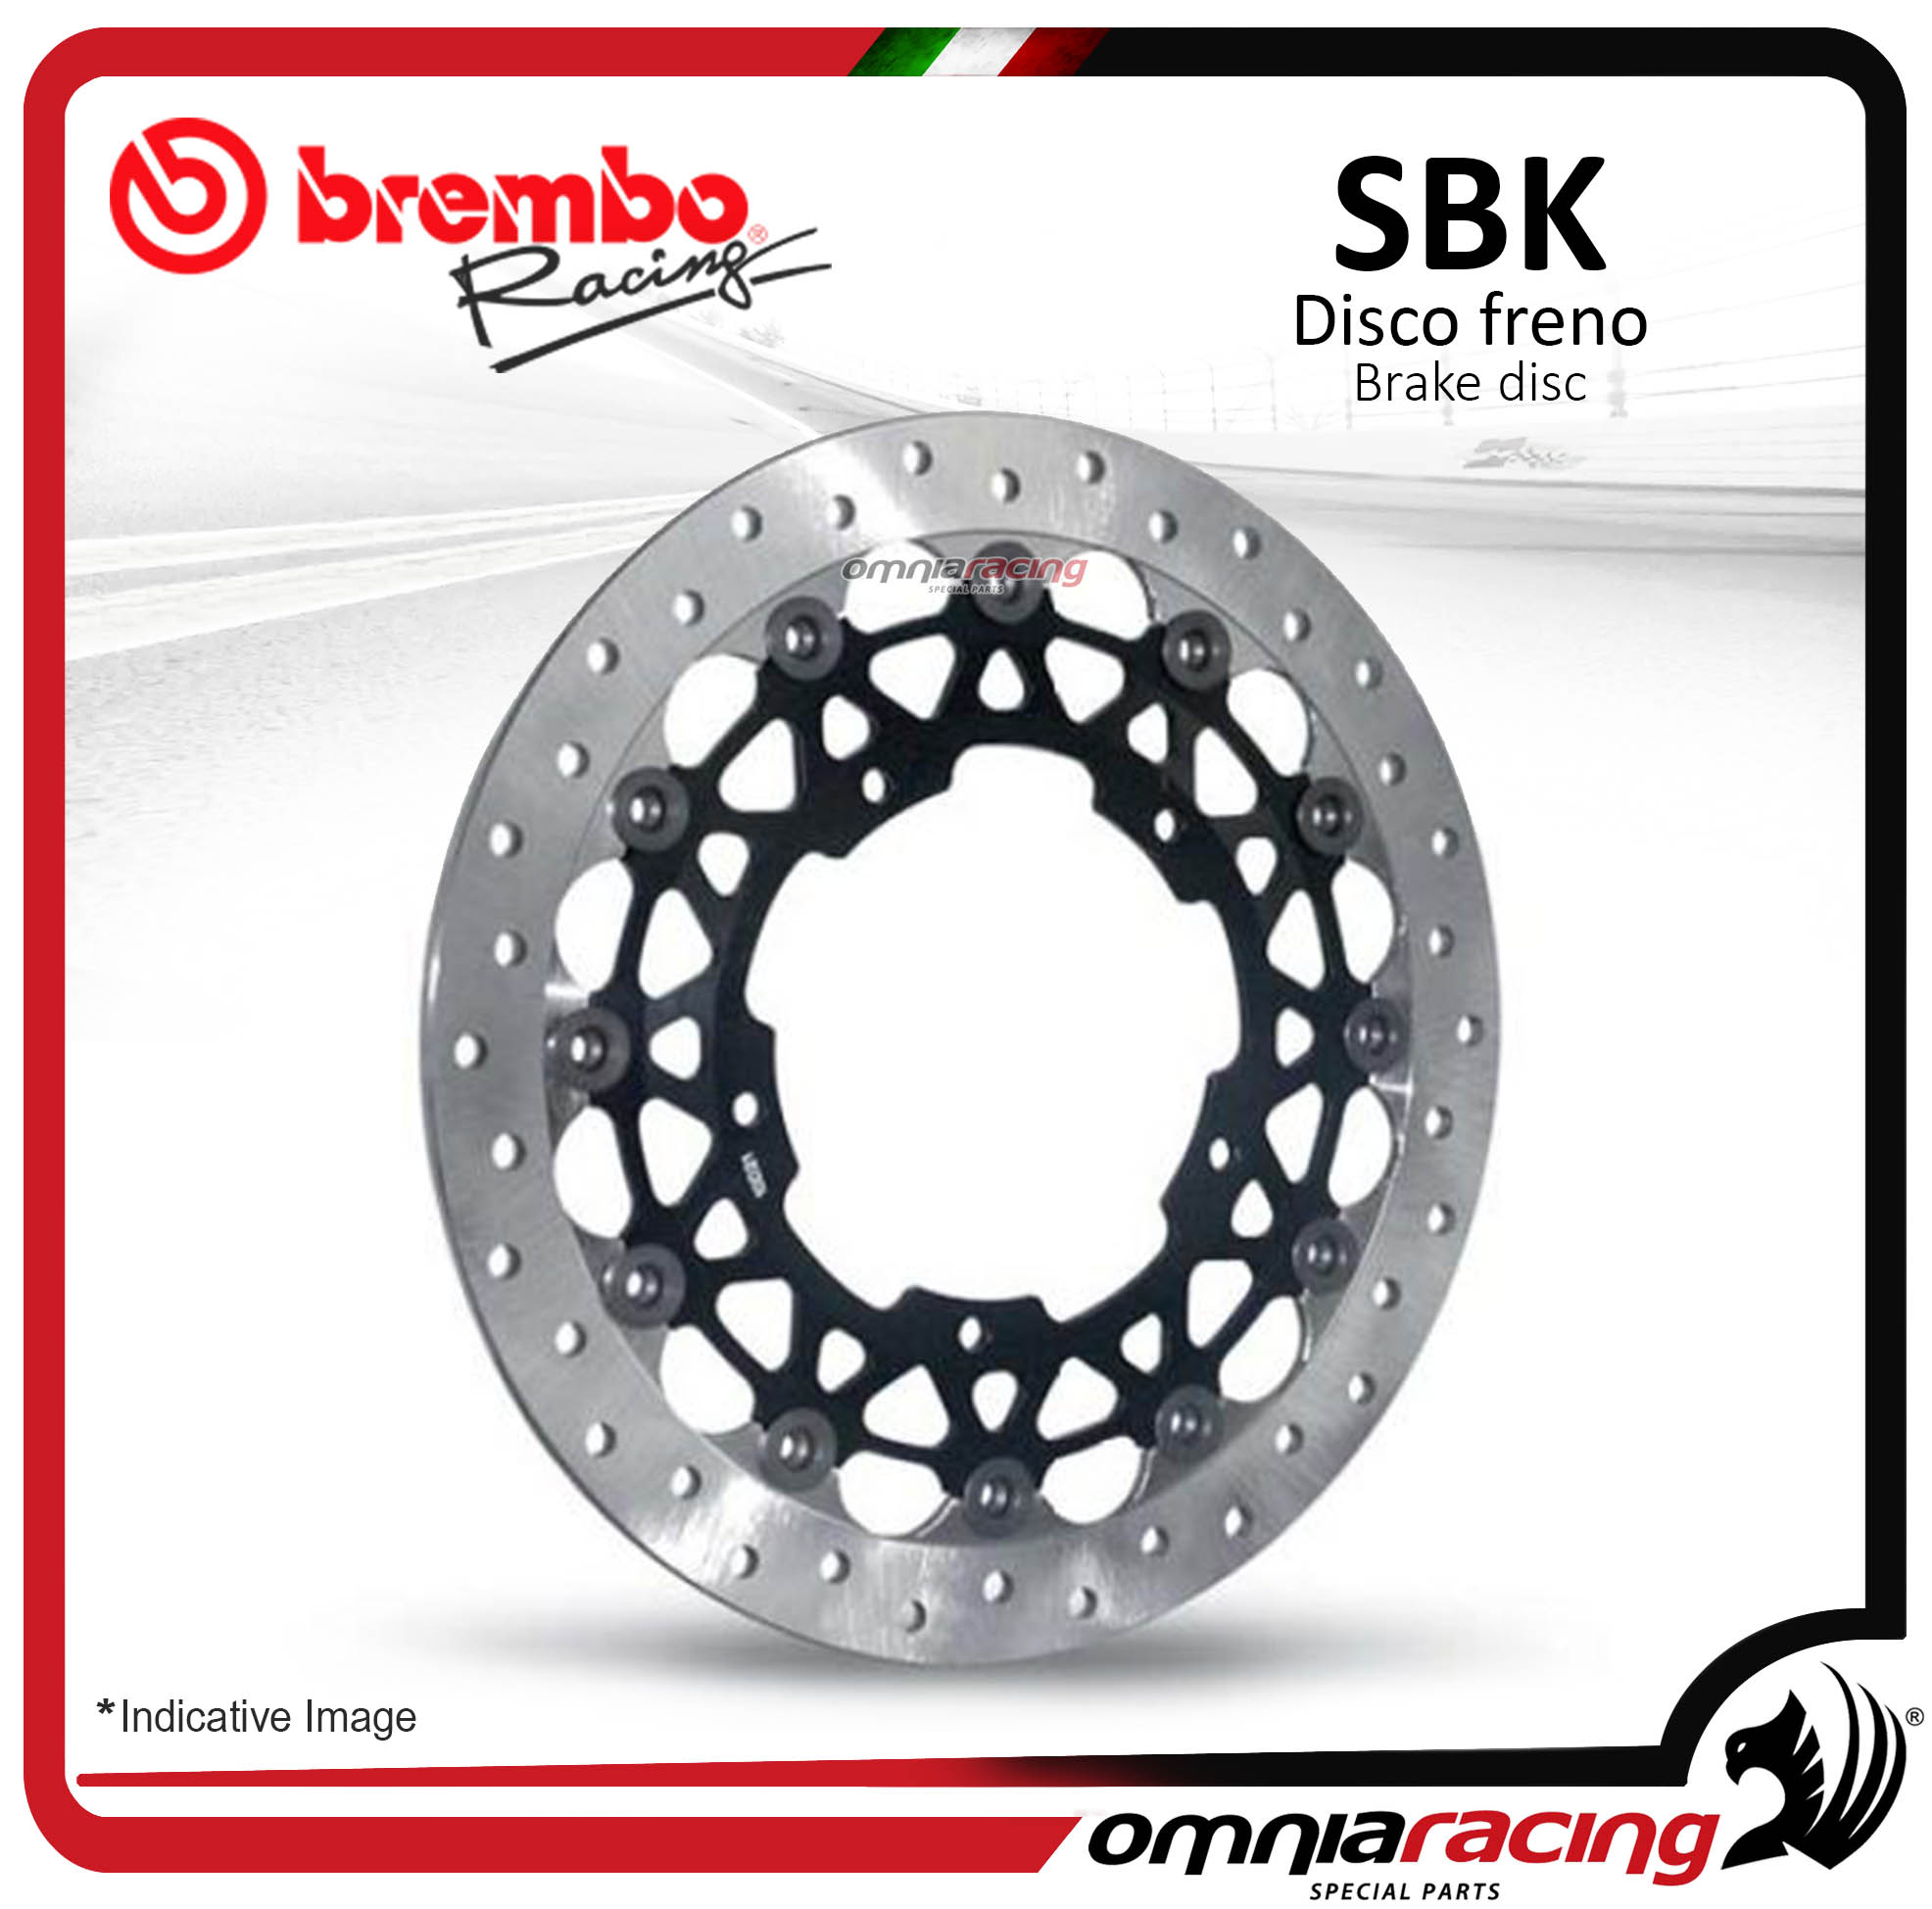 Disco Freno SBK Brembo Racing fascia frenante 30mm spessore 6mm Yamaha YZF R1 R6